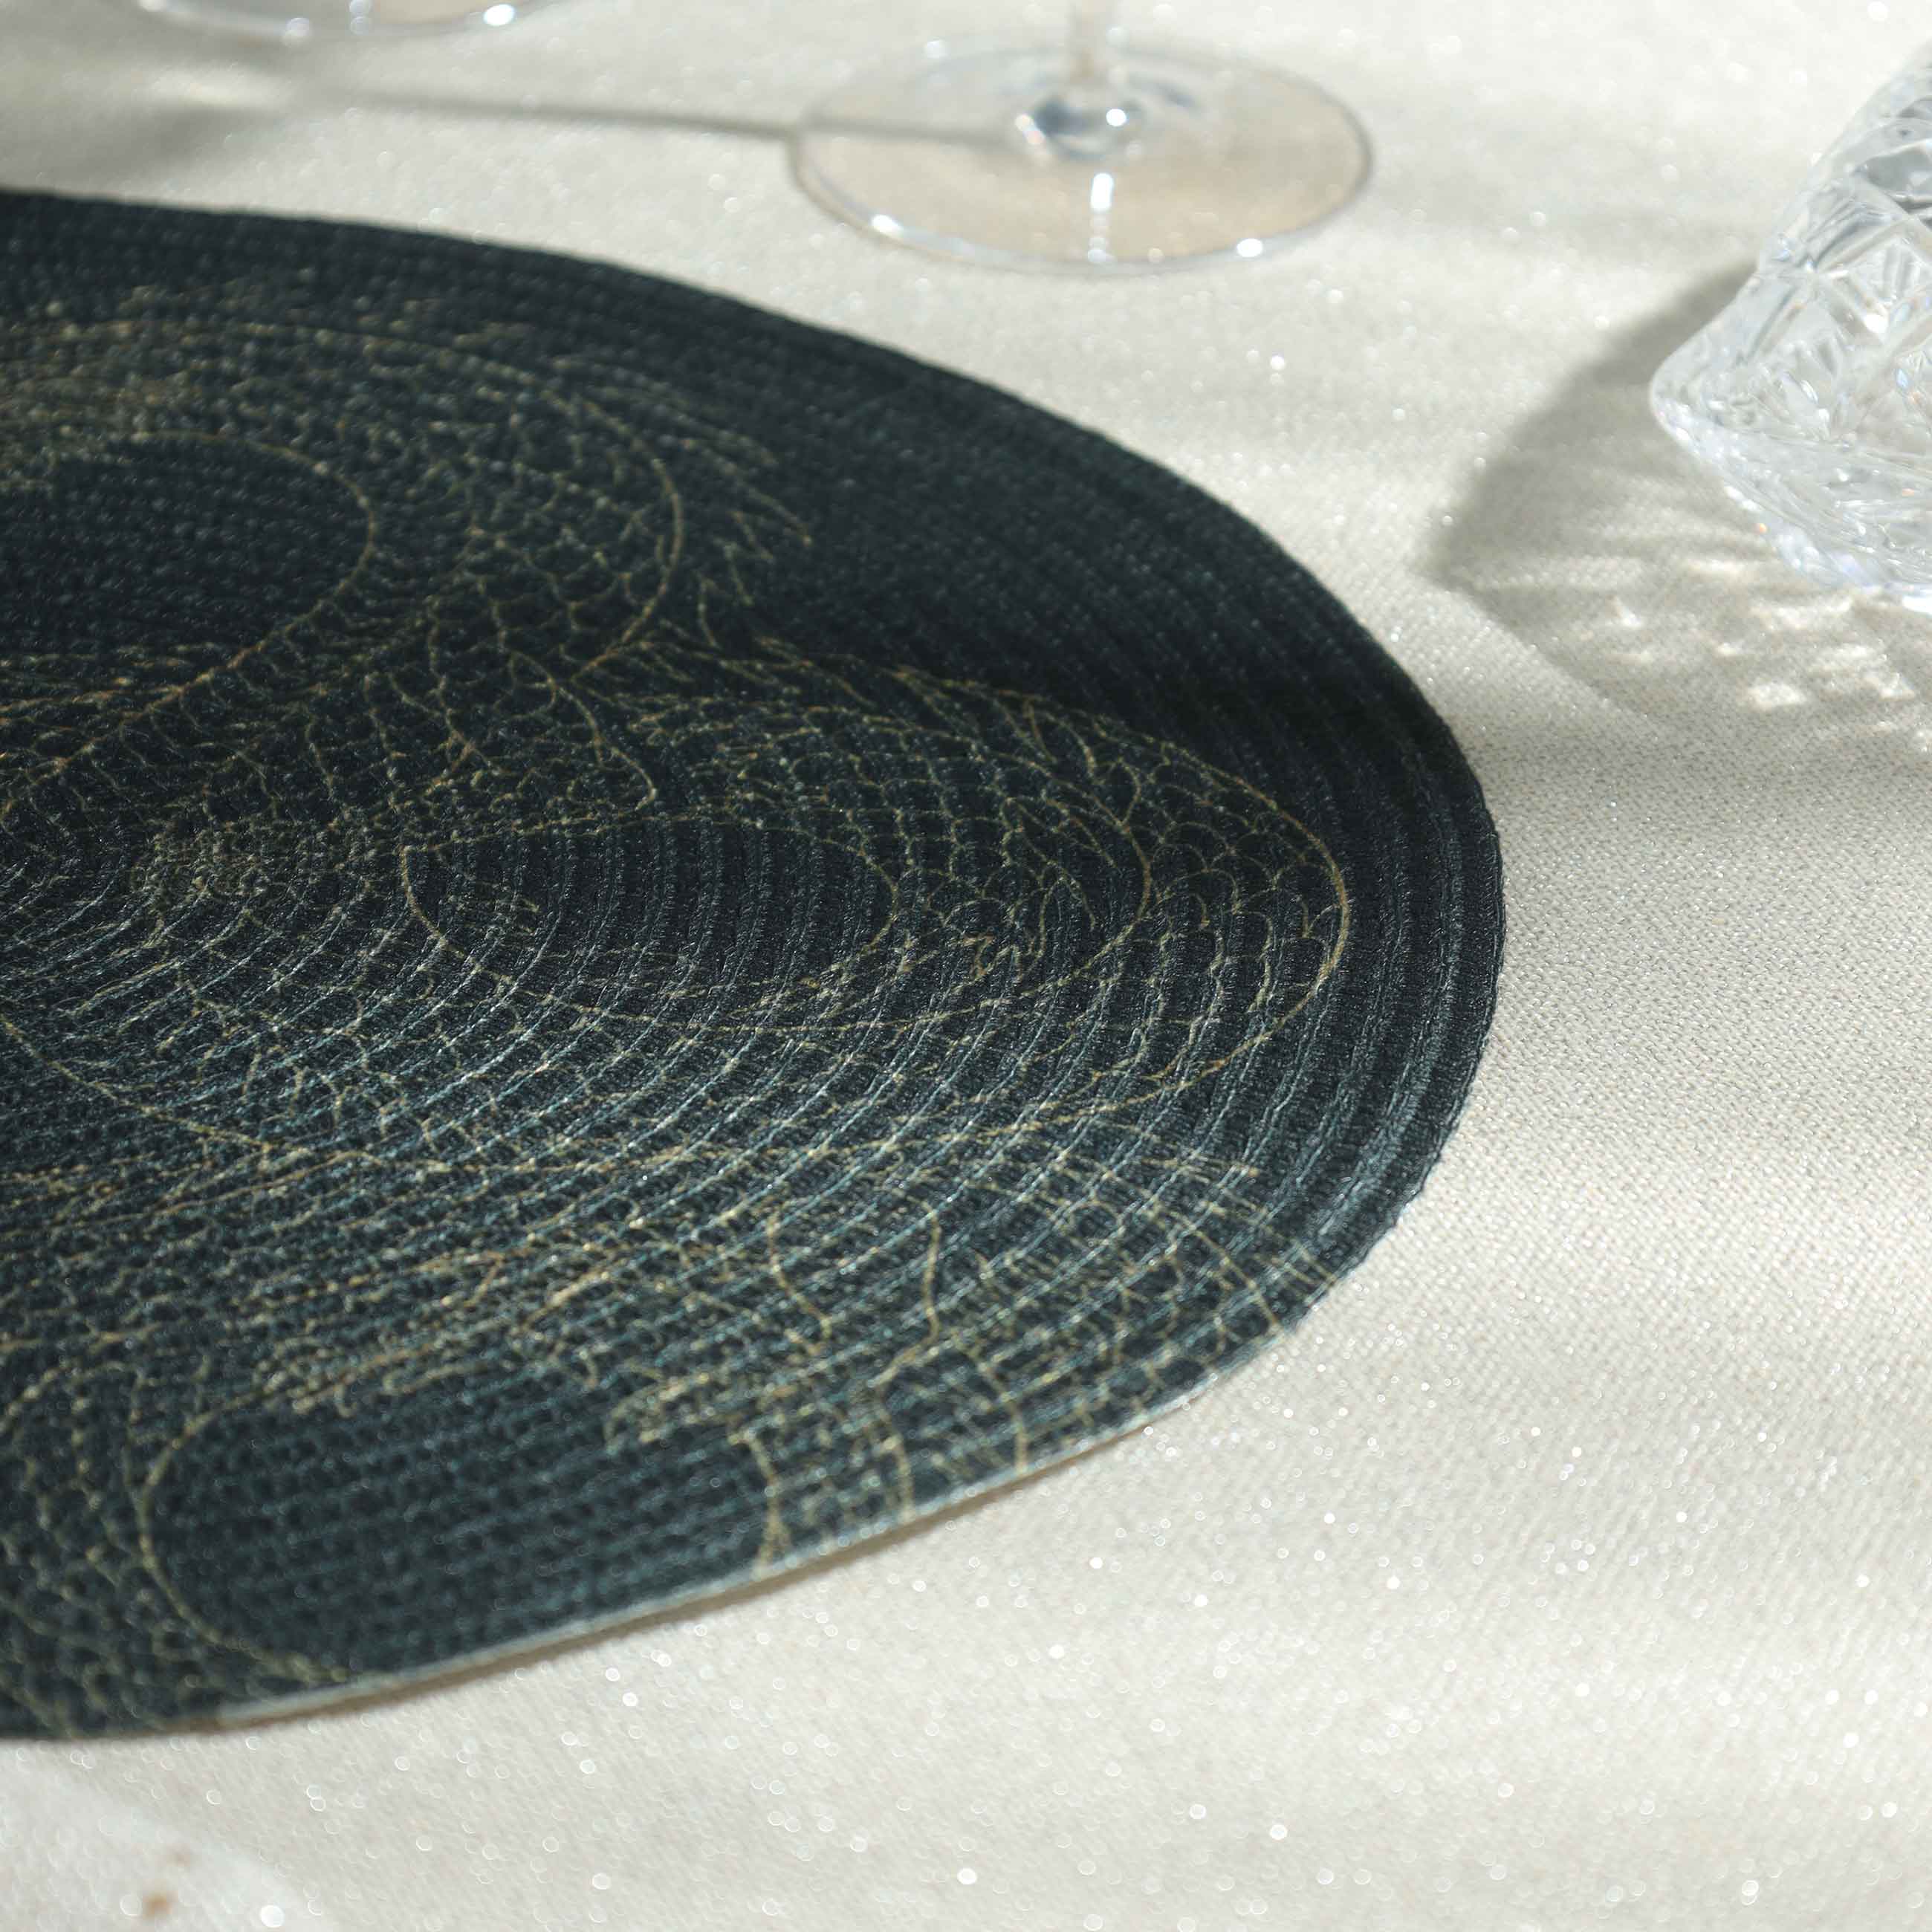 Салфетка под приборы, 38 см, полиэстер, круглая, черная, Дракон, Rotary print изображение № 4